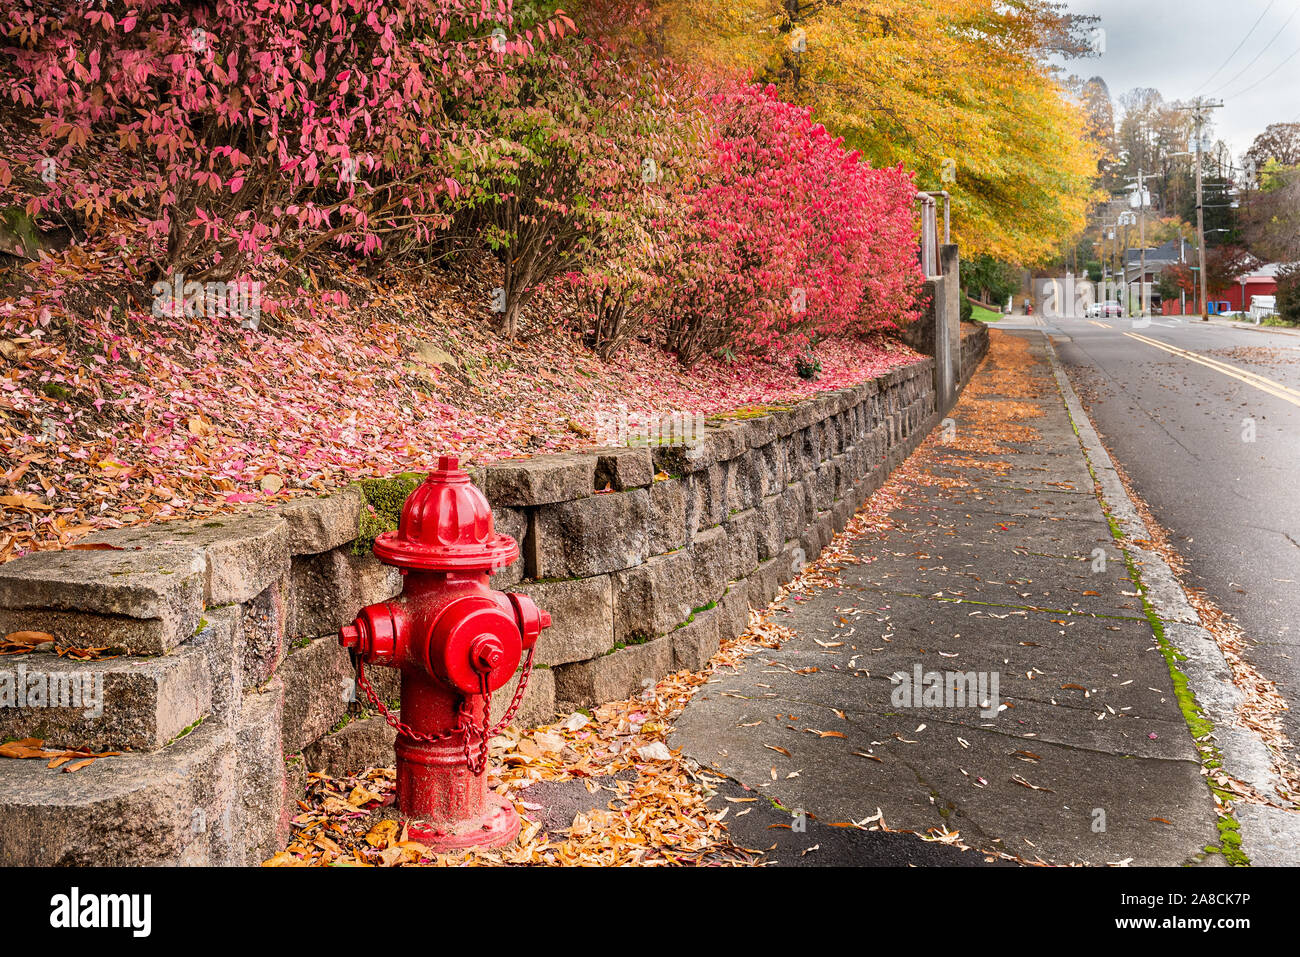 Ein Bunter Herbst Landschaft mit Rosa- und Gelbtönen, plus einen Feuerhydranten wie ein Ausrufezeichen und führenden Linien, über eine Felswand, Gehweg/Straße. Stockfoto